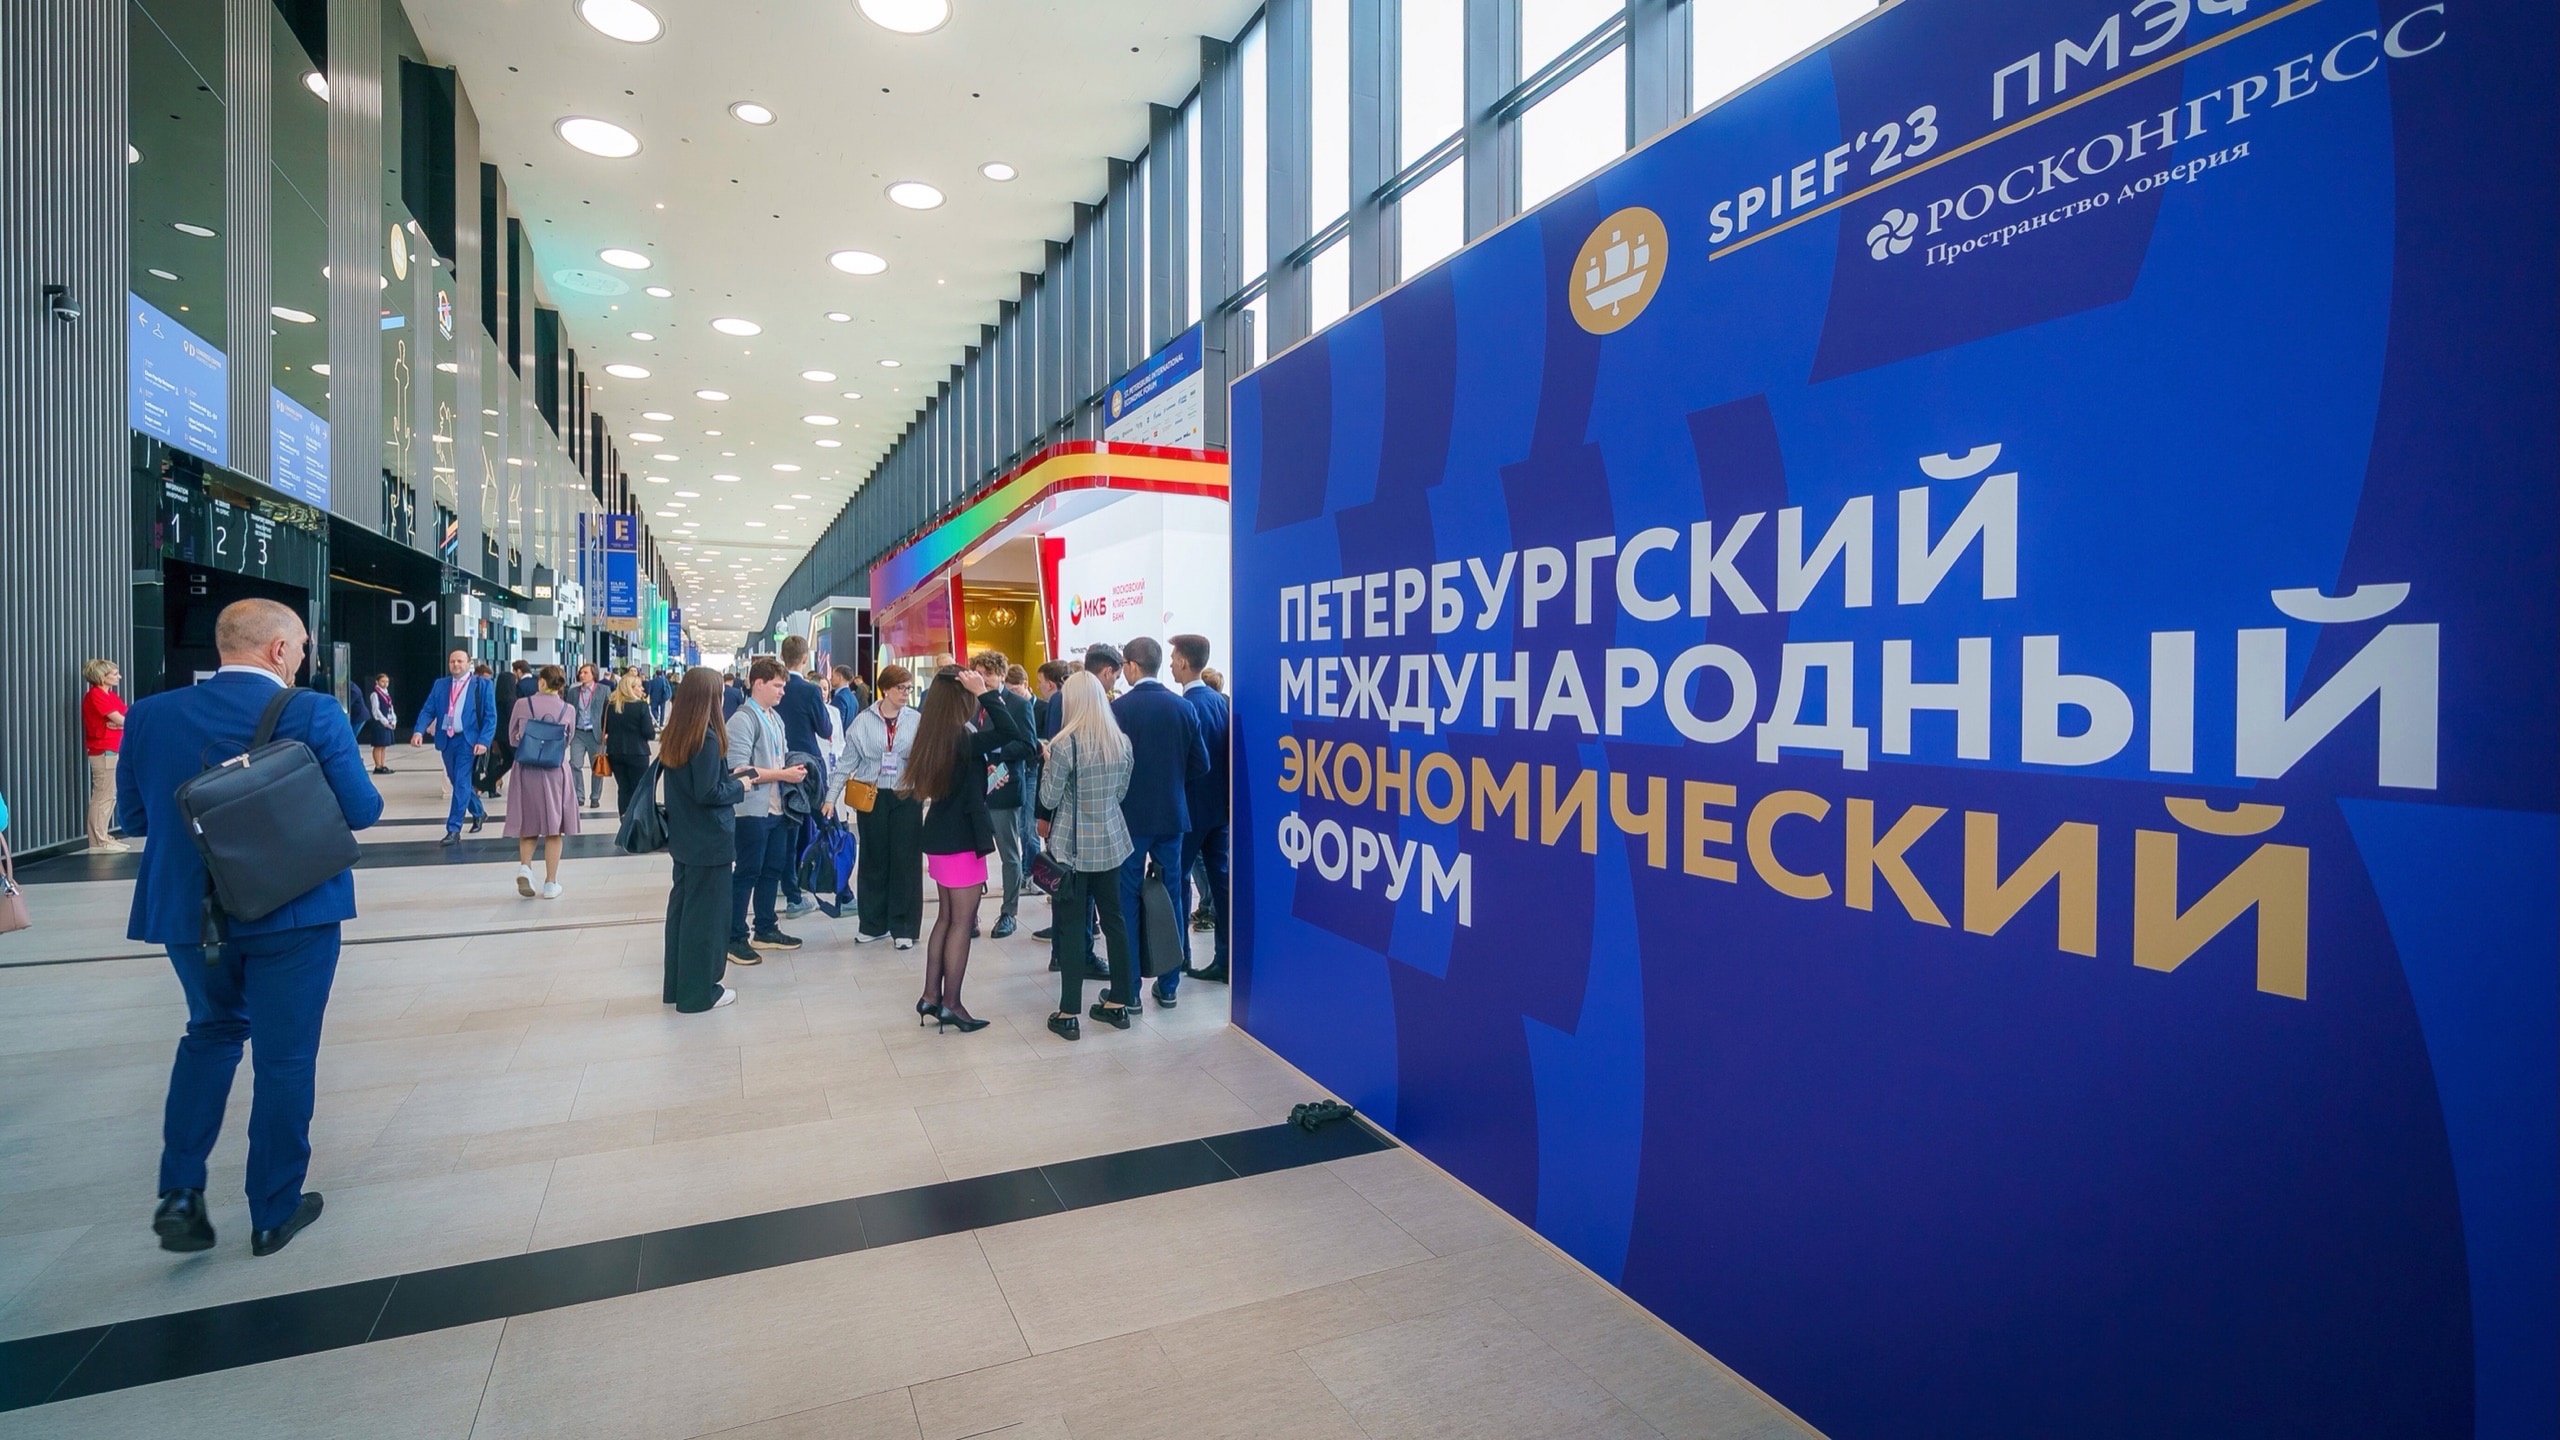 Делегация Югры представила культурные традиции округа на экономическом форуме в Петербурге